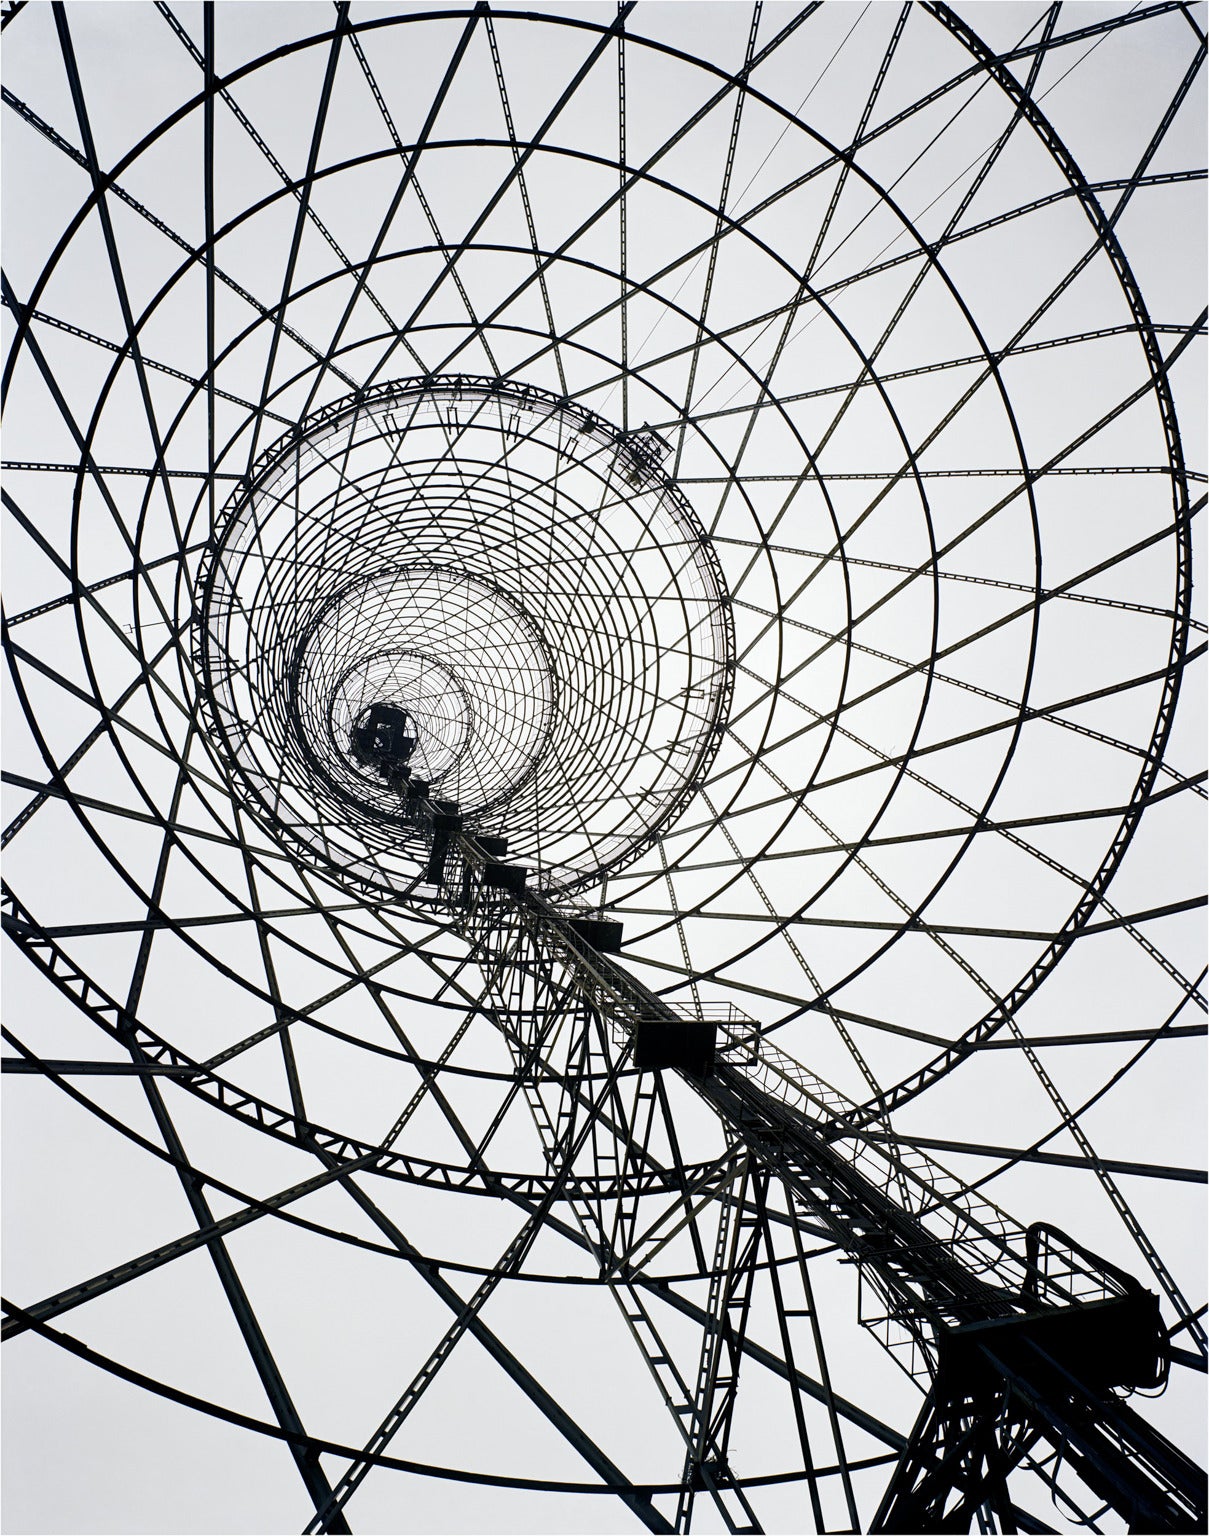 Richard Pare Abstract Photograph - Shabolovka Radio Tower, Vladimir Shukov